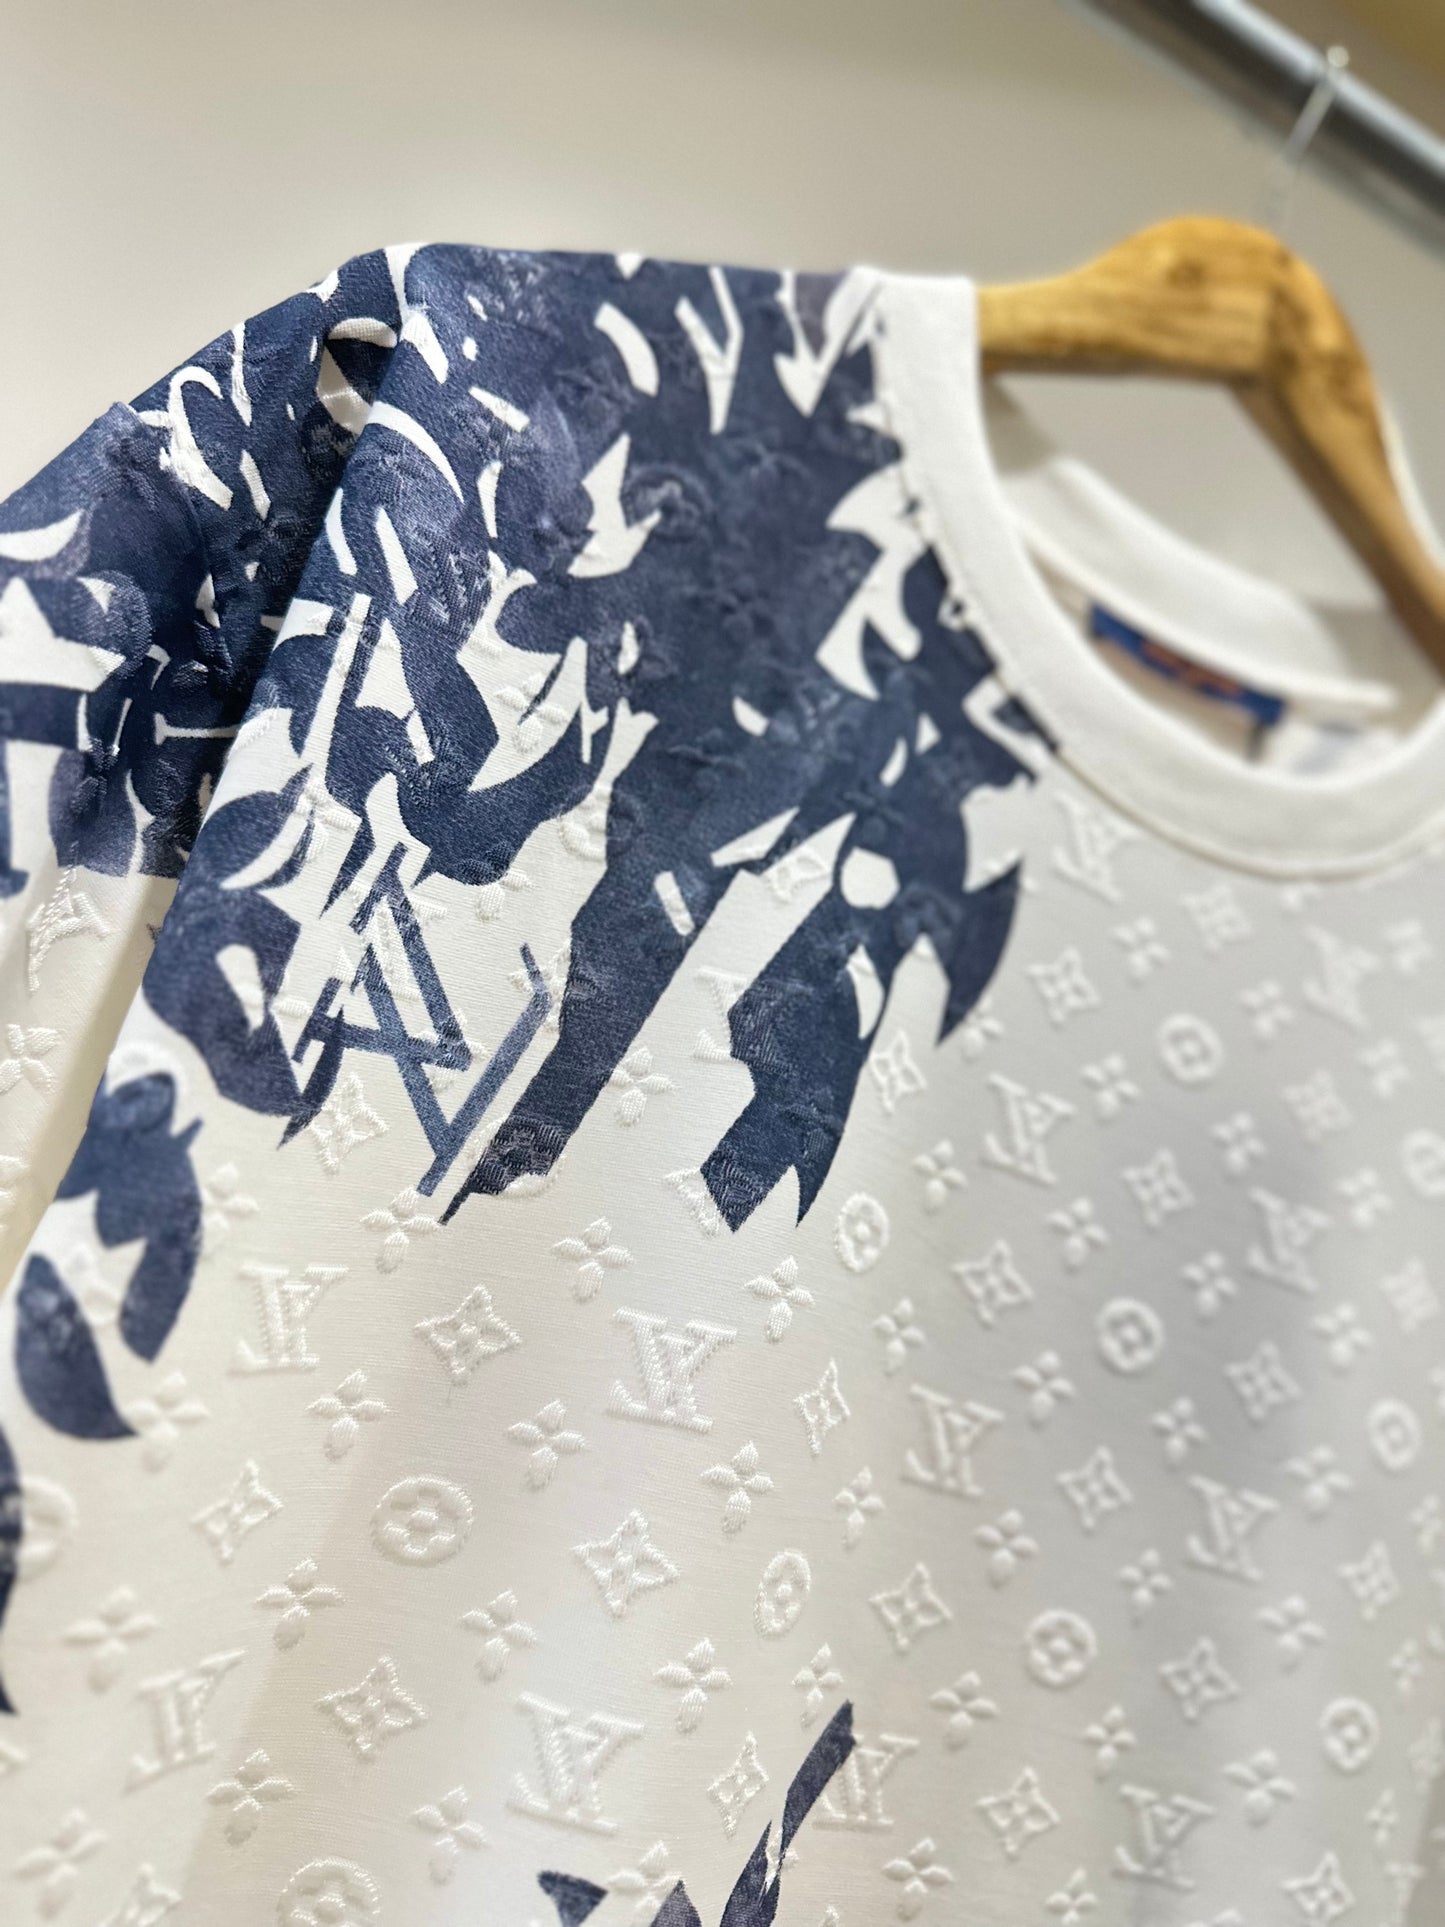 Louis Vuitton Monogram Cotton Pique T-Shirt